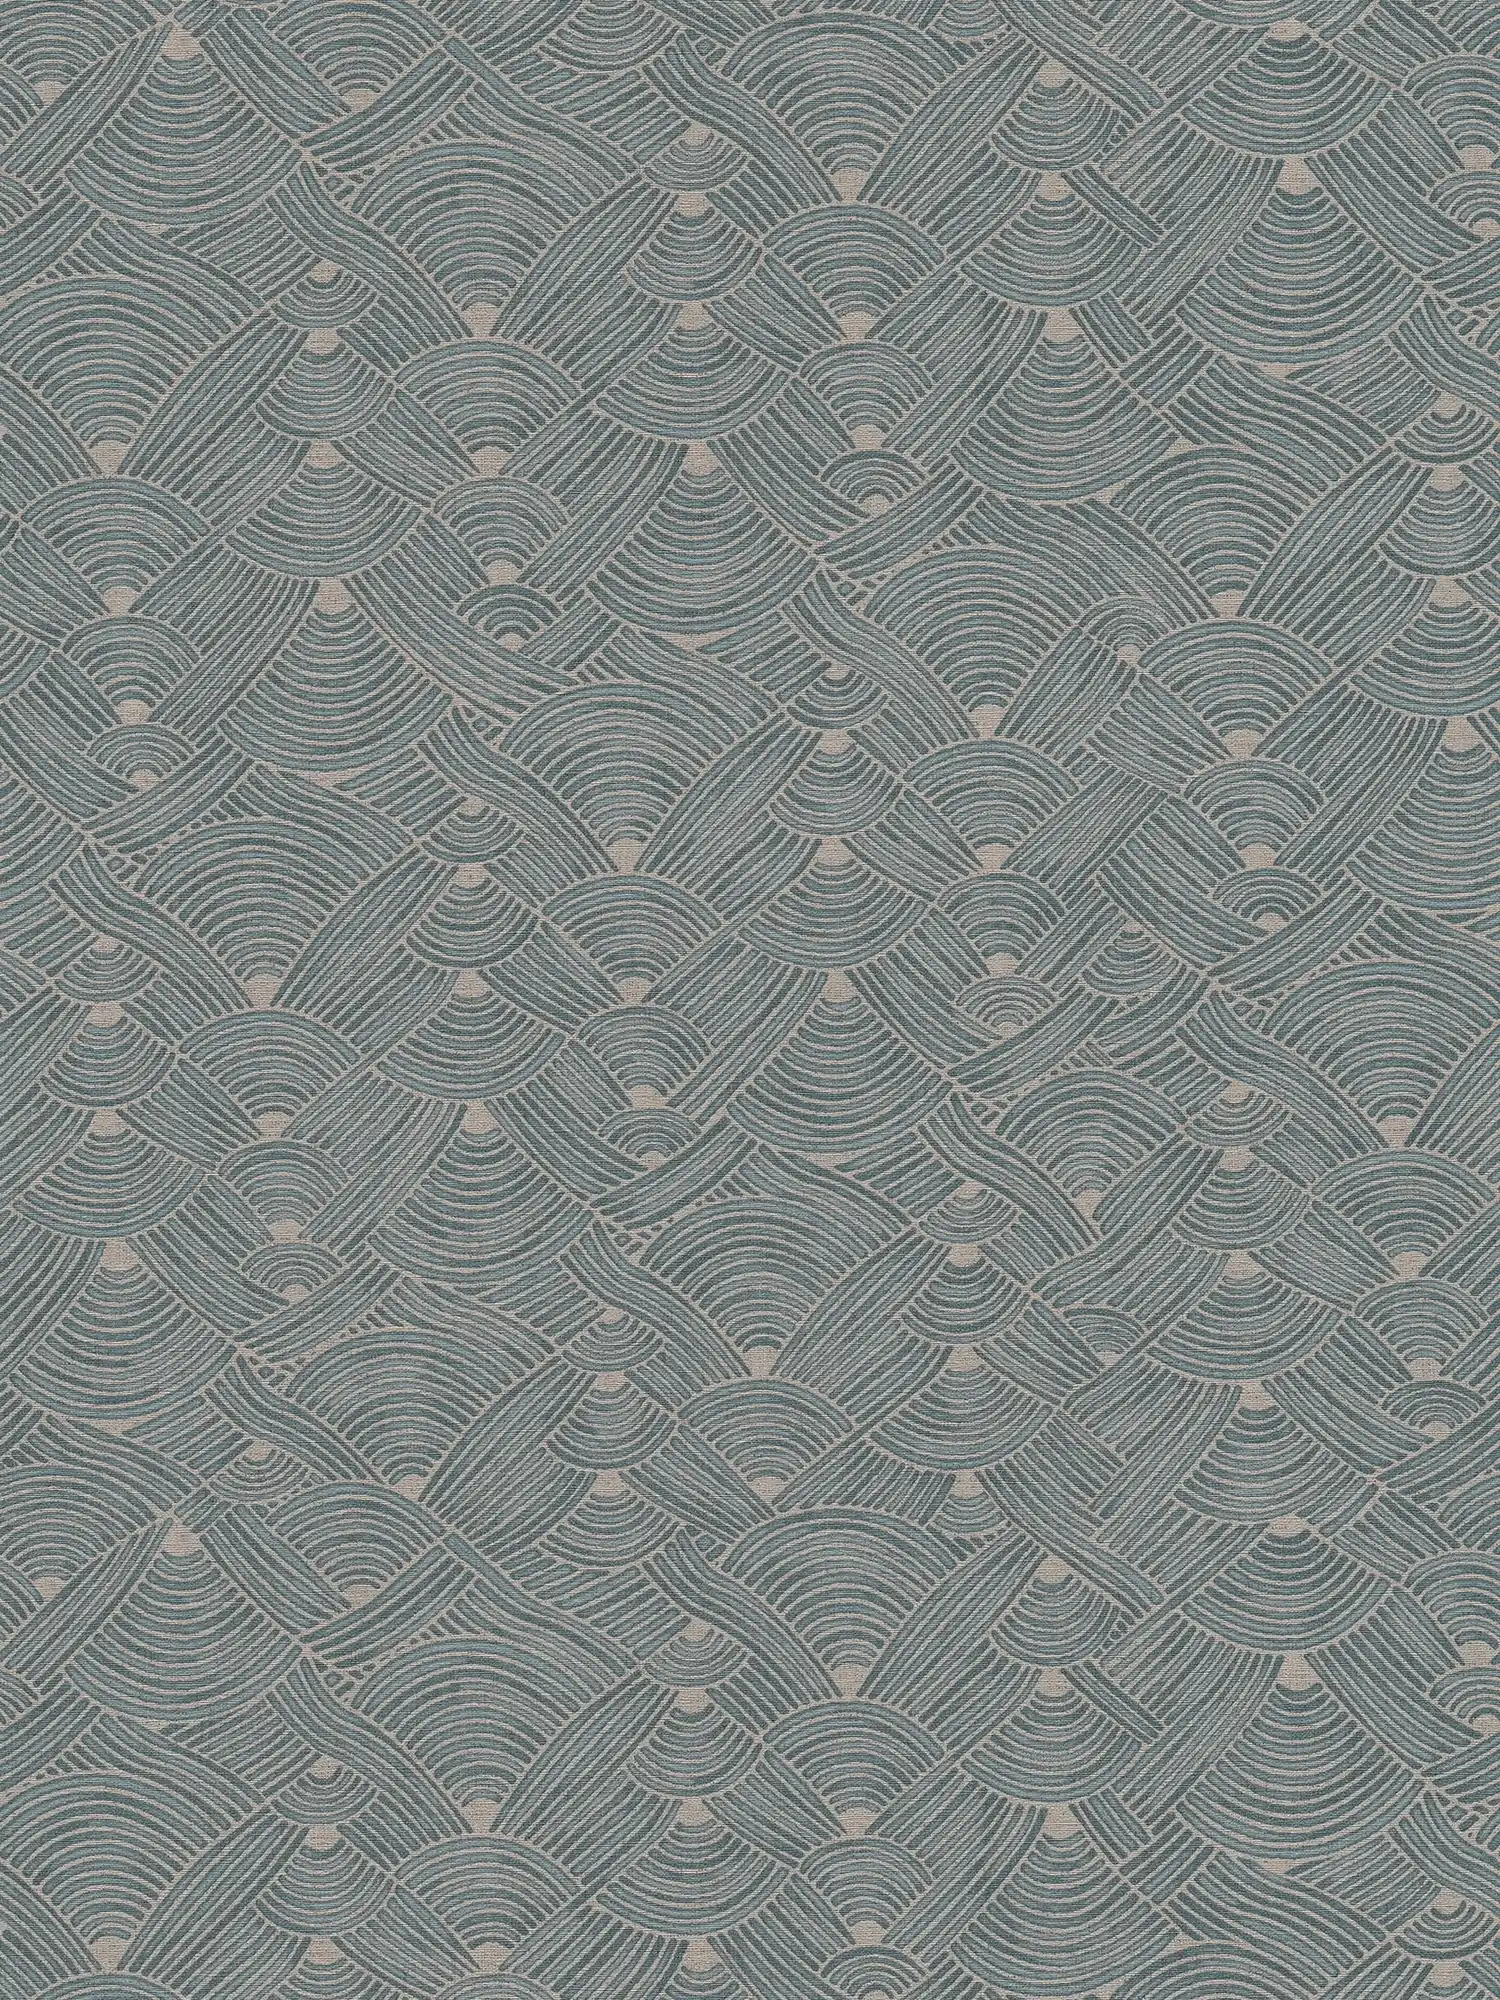 Vliesbehang ethno design met mand look - blauw, grijs, beige
